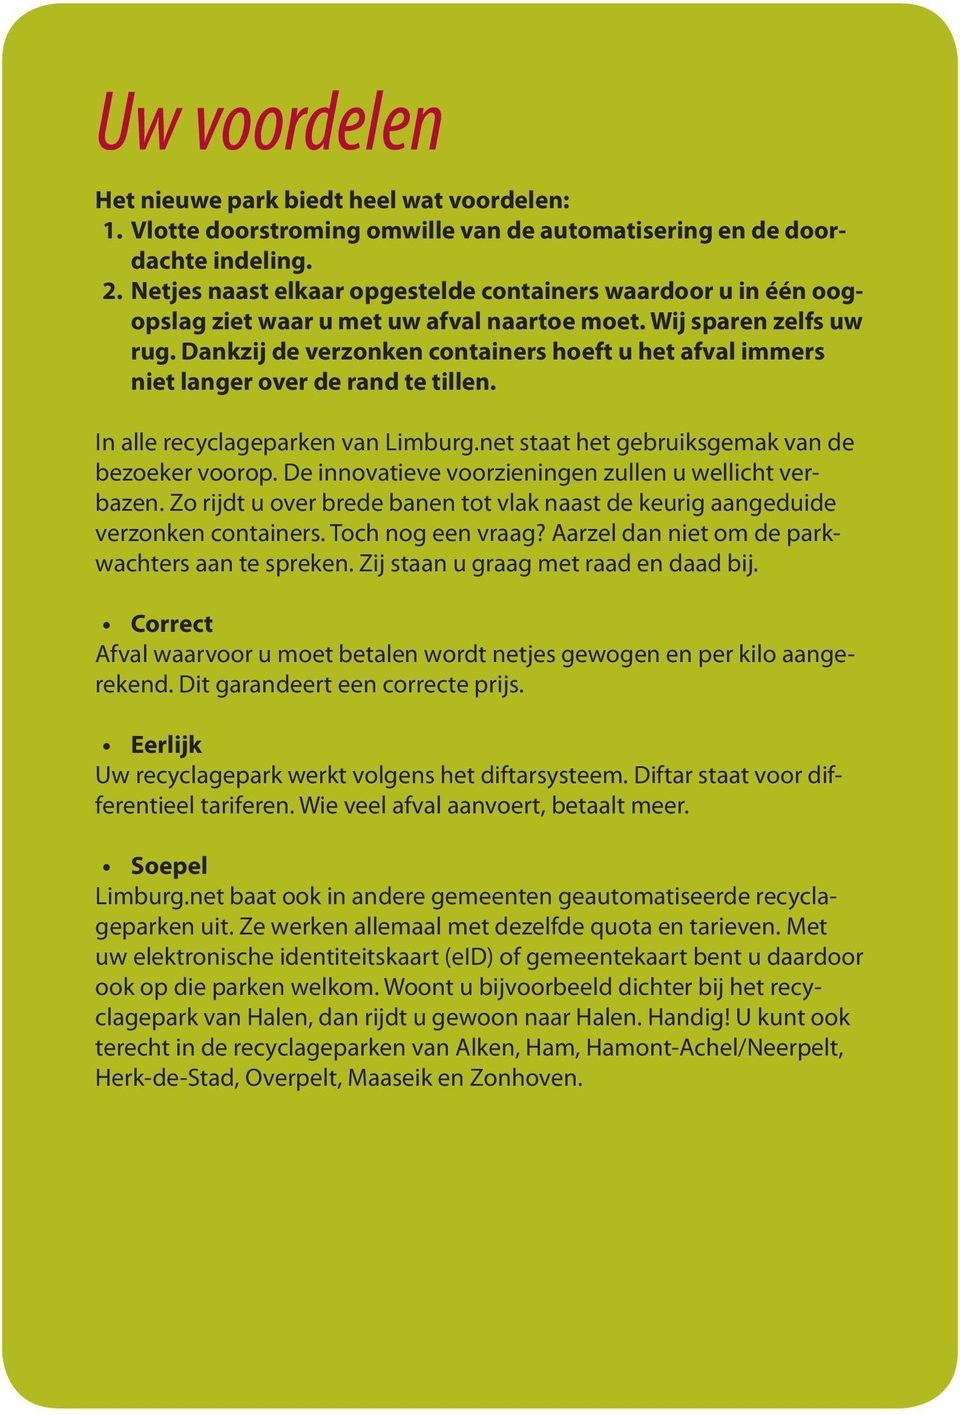 Dankzij de verzonken containers hoeft u het afval immers niet langer over de rand te tillen. In alle recyclageparken van Limburg.net staat het gebruiksgemak van de bezoeker voorop.